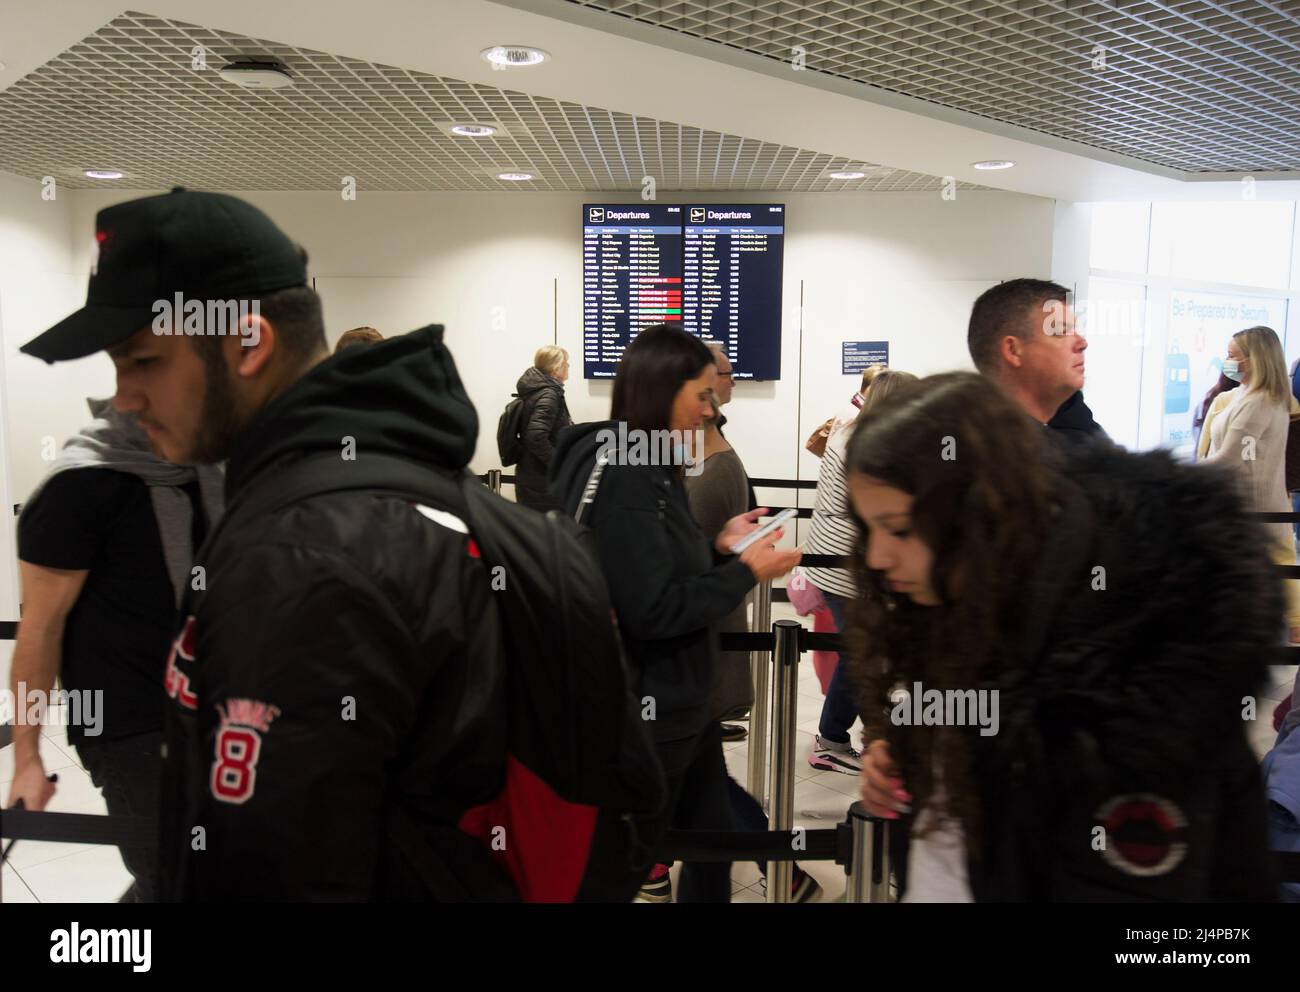 Warteschlangen bilden sich an den Sicherheitsstellen des Flughafens von Birmingham, da auf vielen großen britischen Flughäfen Personalmangel herrscht, leiden einige Flughäfen unter riesigen Menschenschlangen Stockfoto